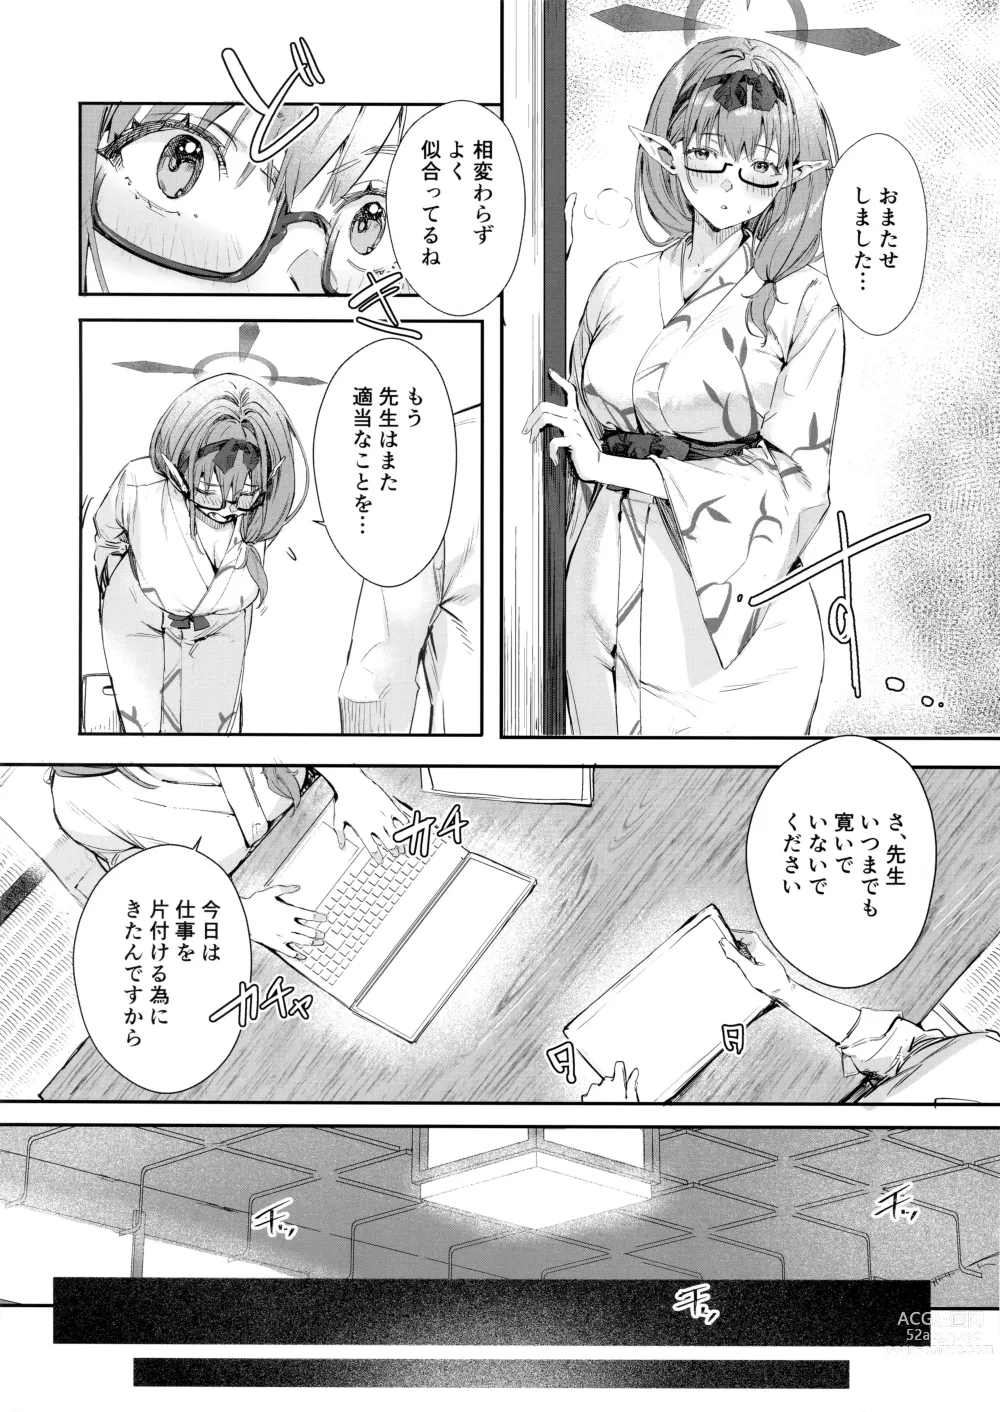 Page 5 of doujinshi Yukemuri Archive